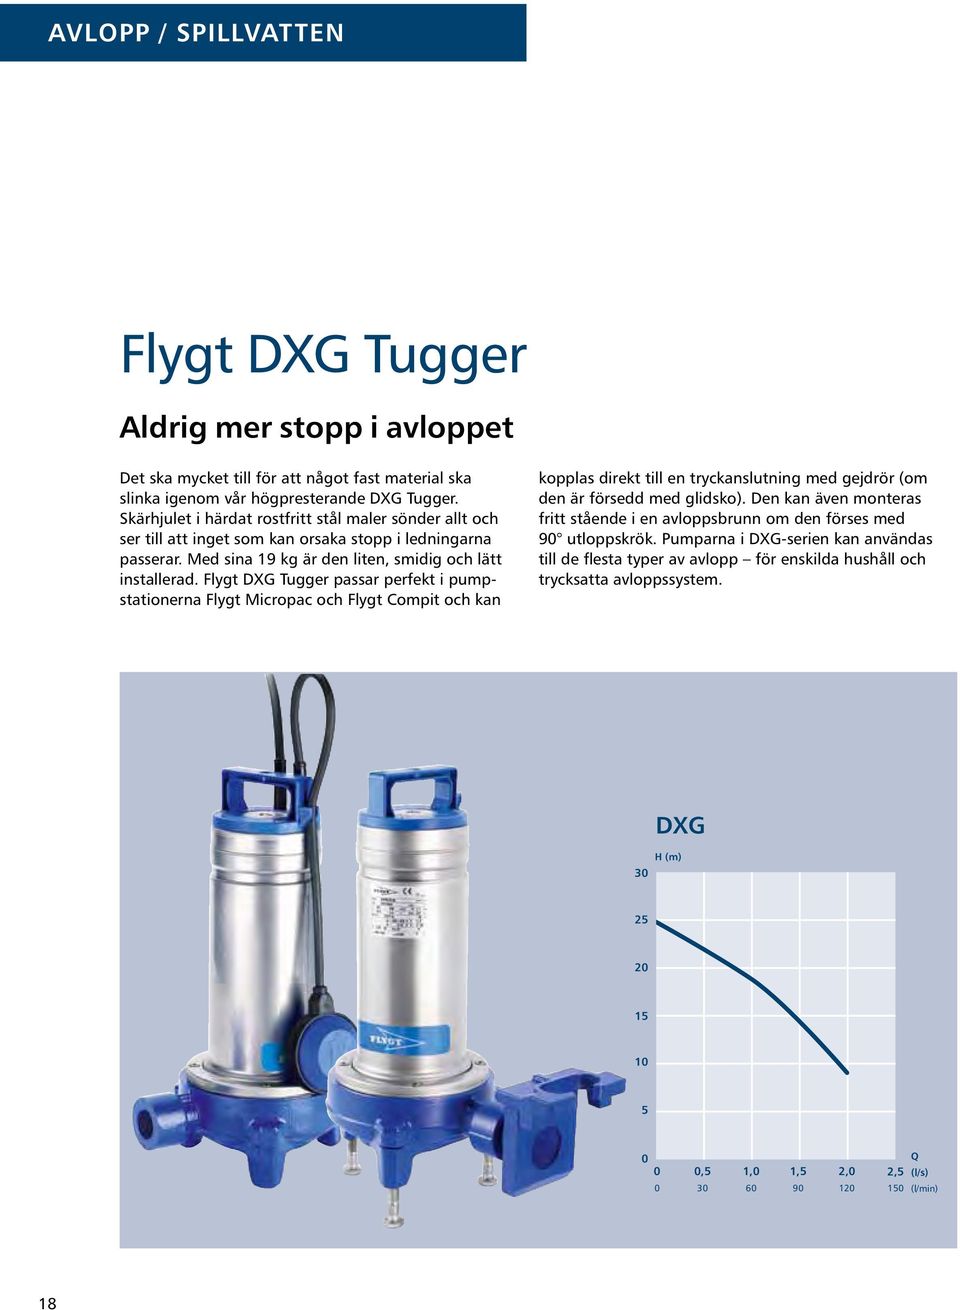 Flygt DXG Tugger passar perfekt i pumpstationerna Flygt Micropac och Flygt Compit och kan kopplas direkt till en tryckanslutning med gejdrör (om den är försedd med glidsko).